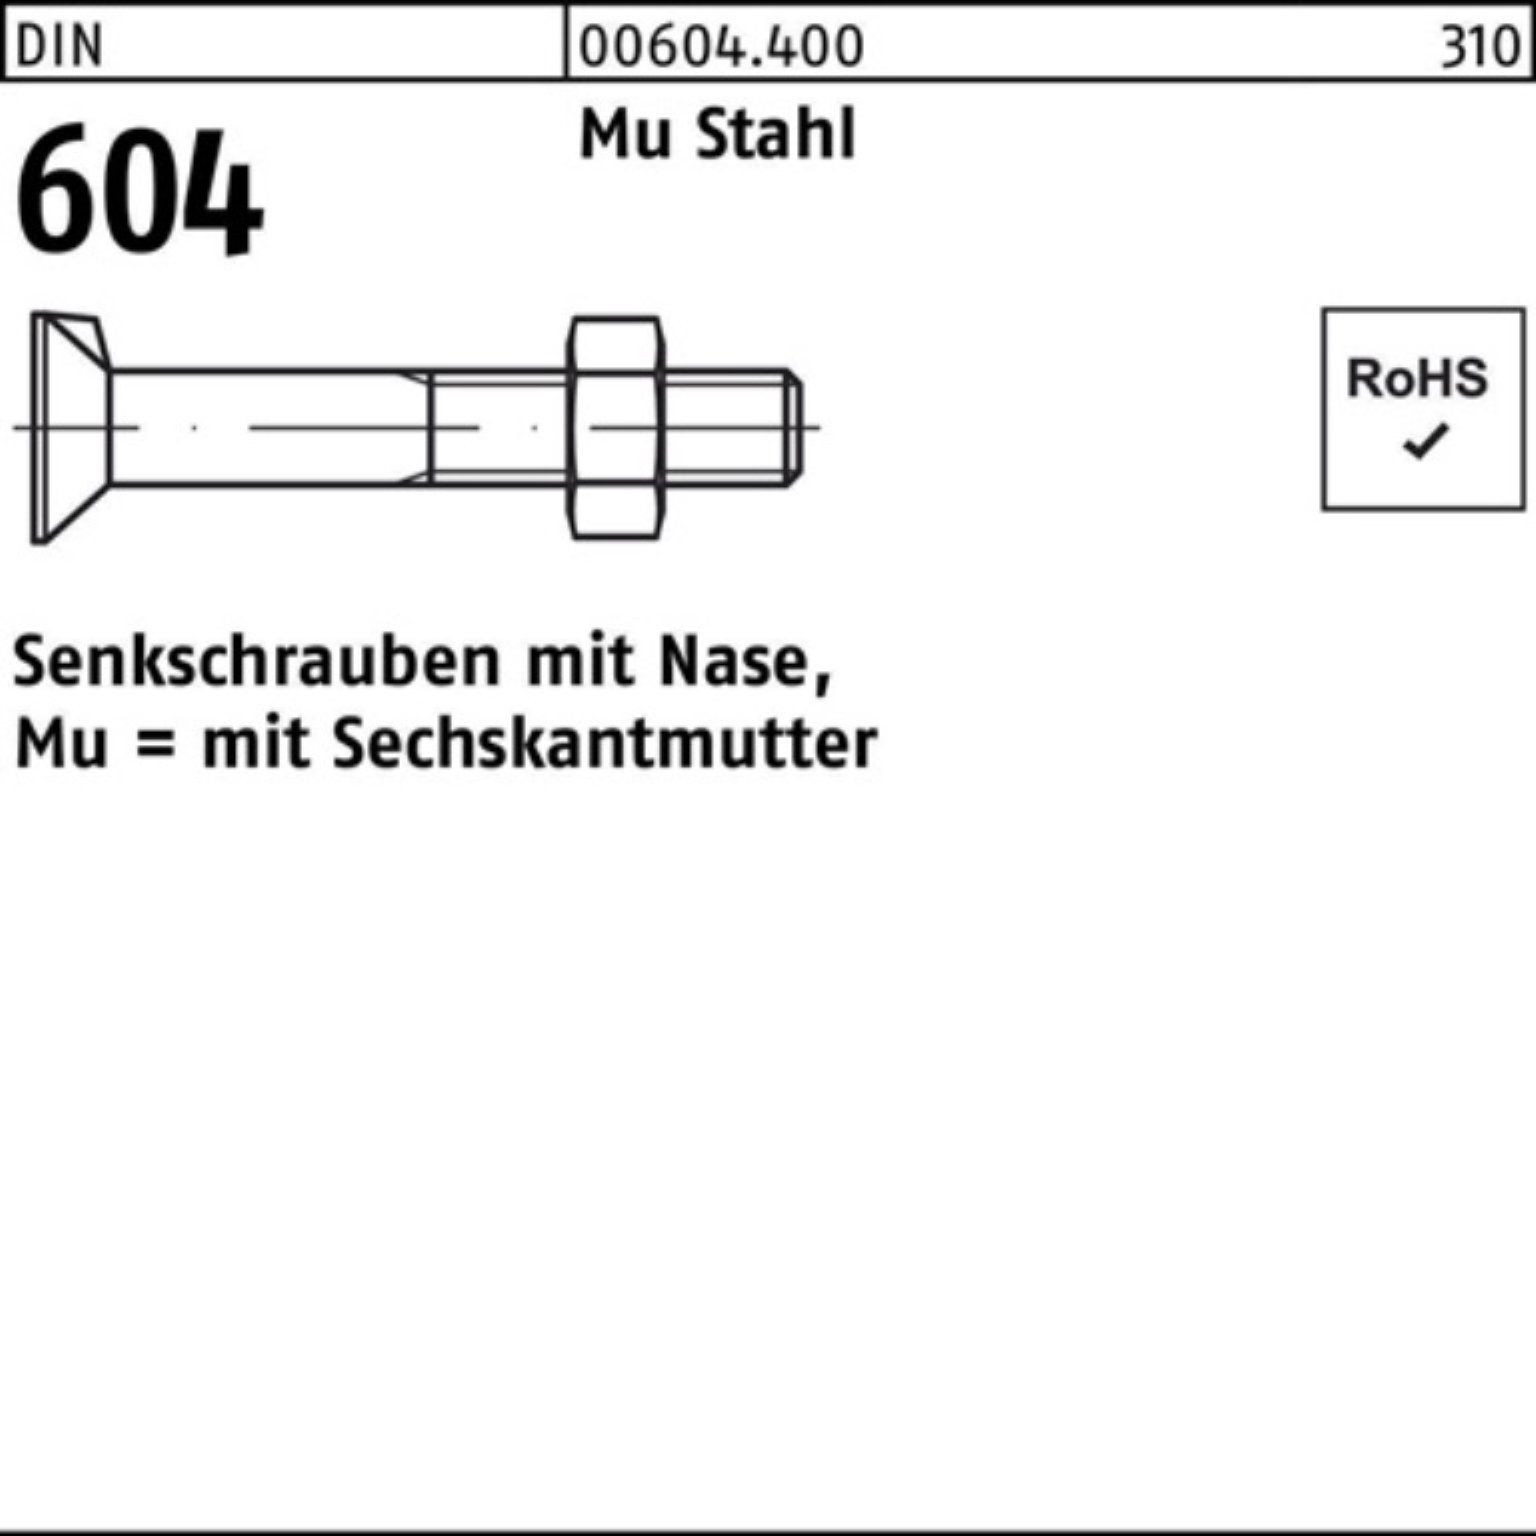 55 Pack 604 Stahl Senkschraube M10x Mu 1 Nase/6-ktmutter 100er Senkschraube DIN 4.6 Reyher